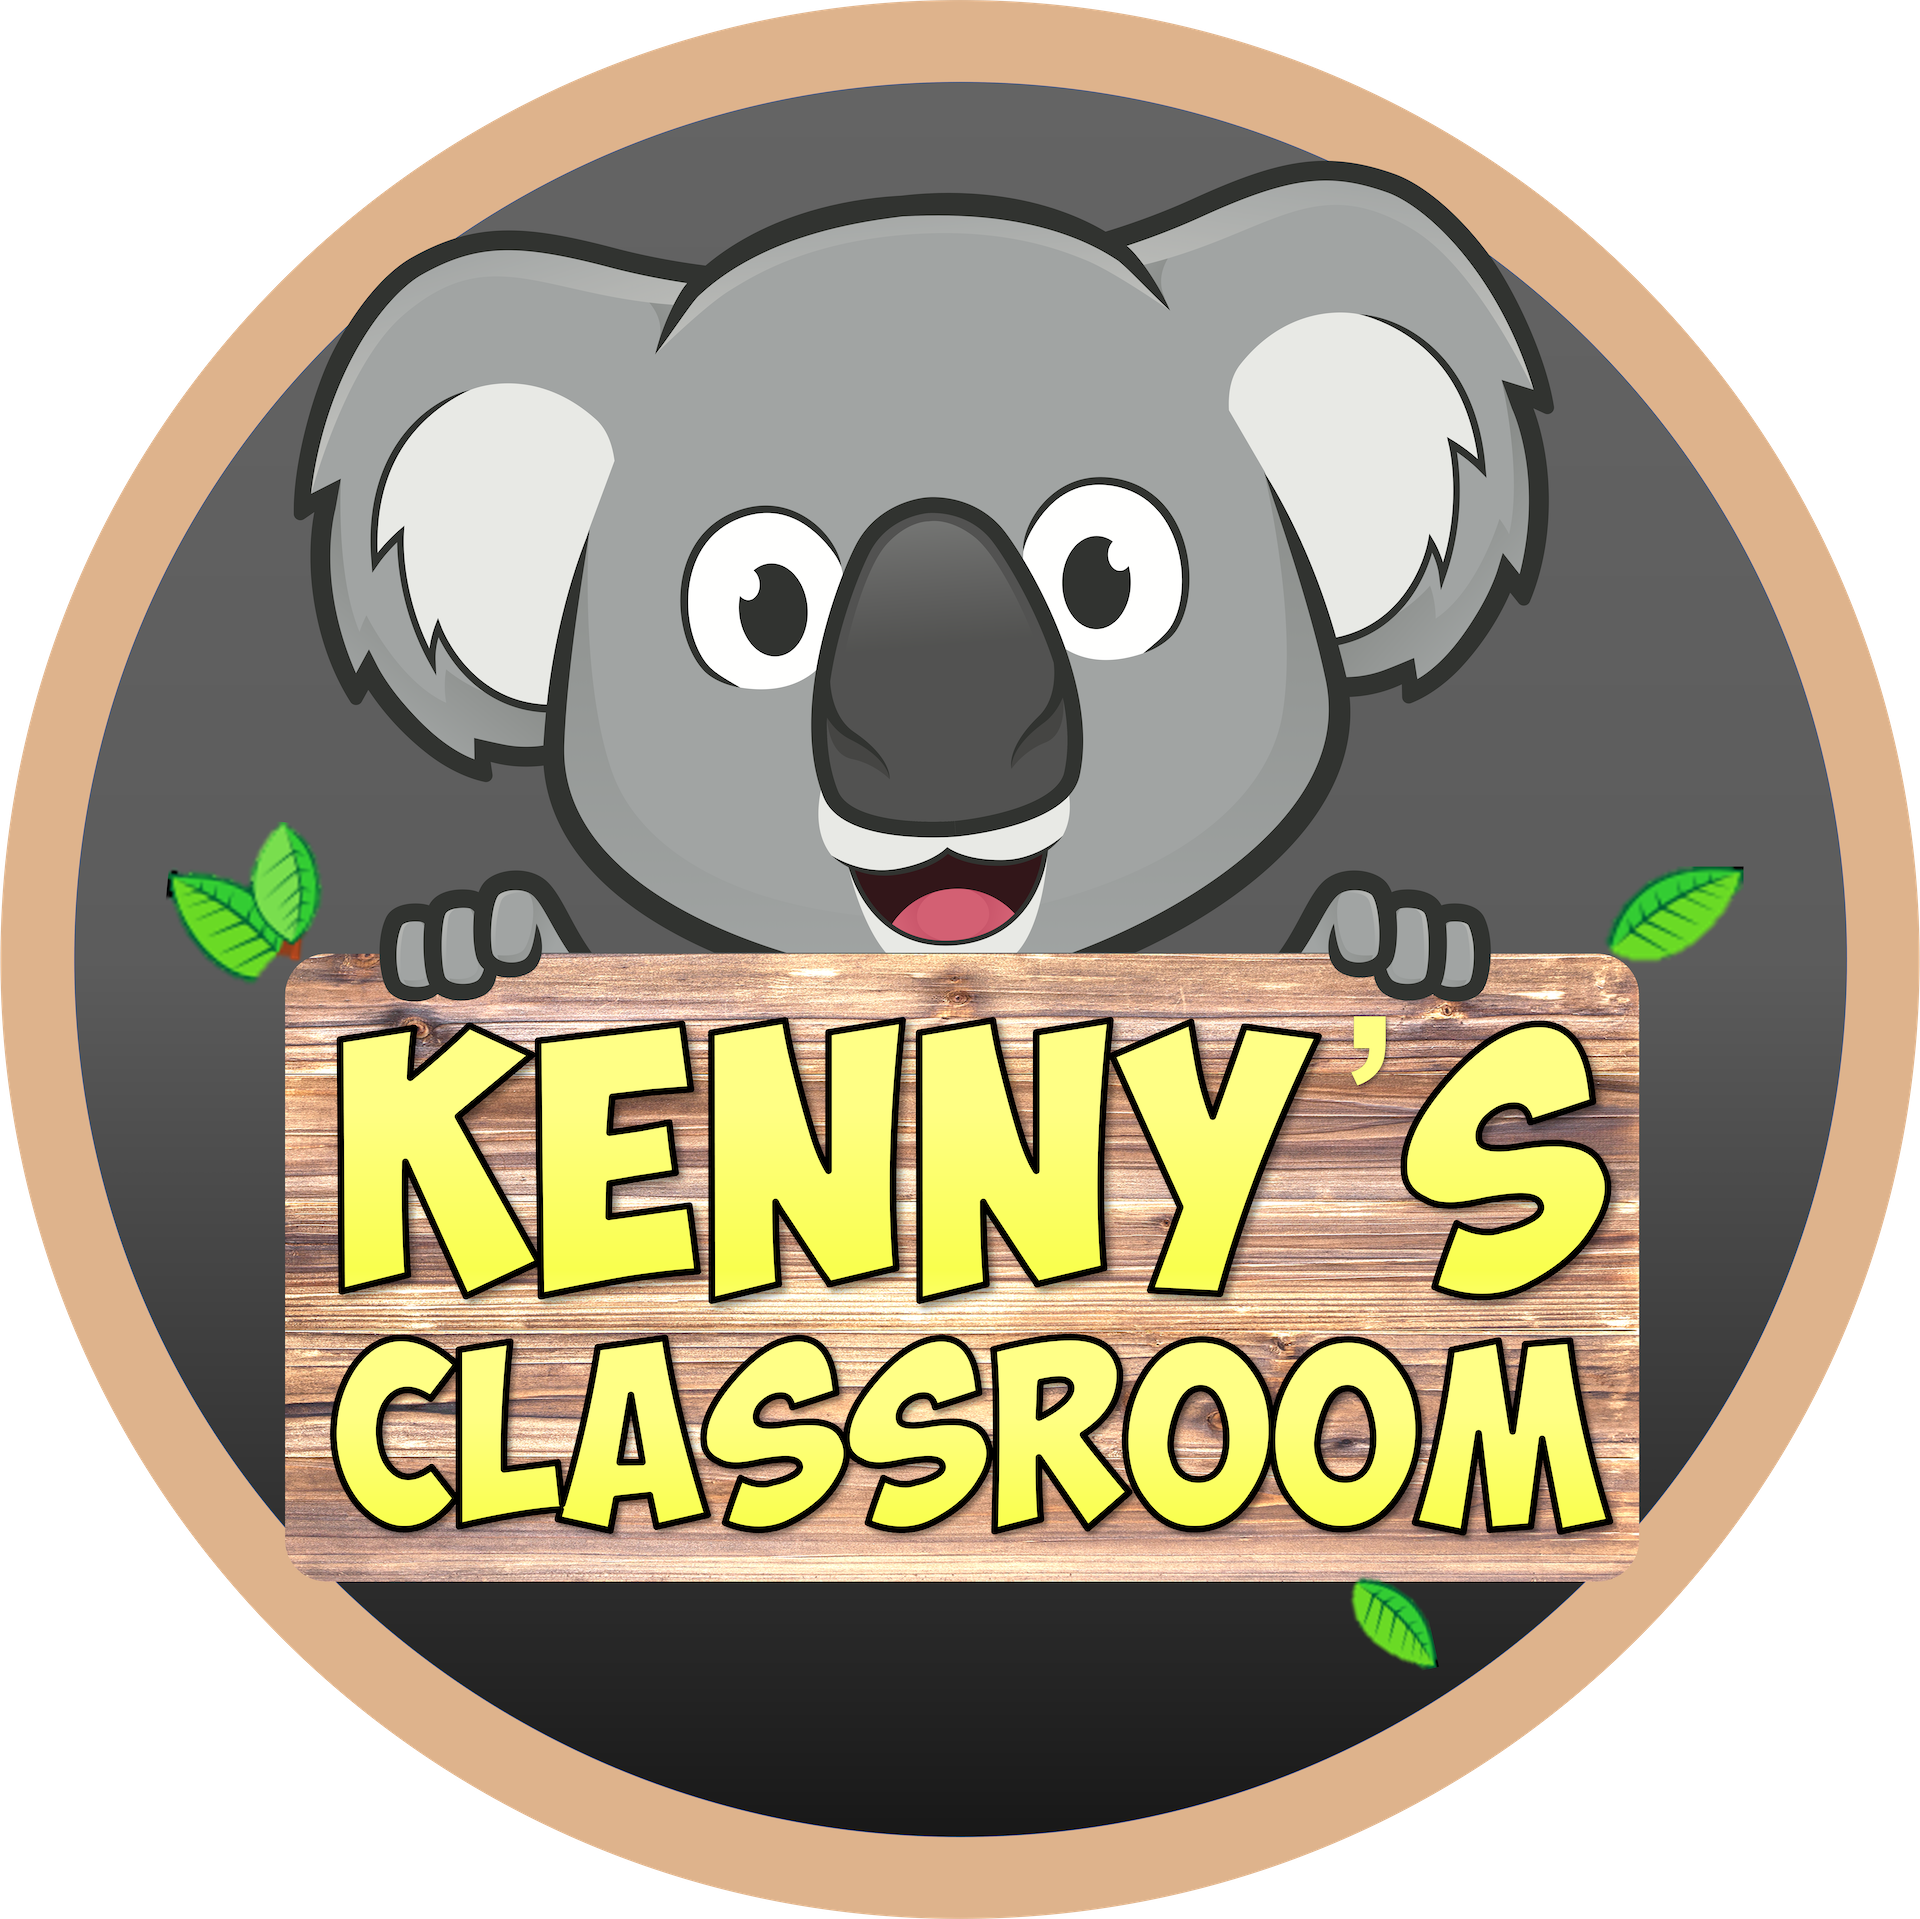 Kennys Classroom Logo Darker Smaller 1